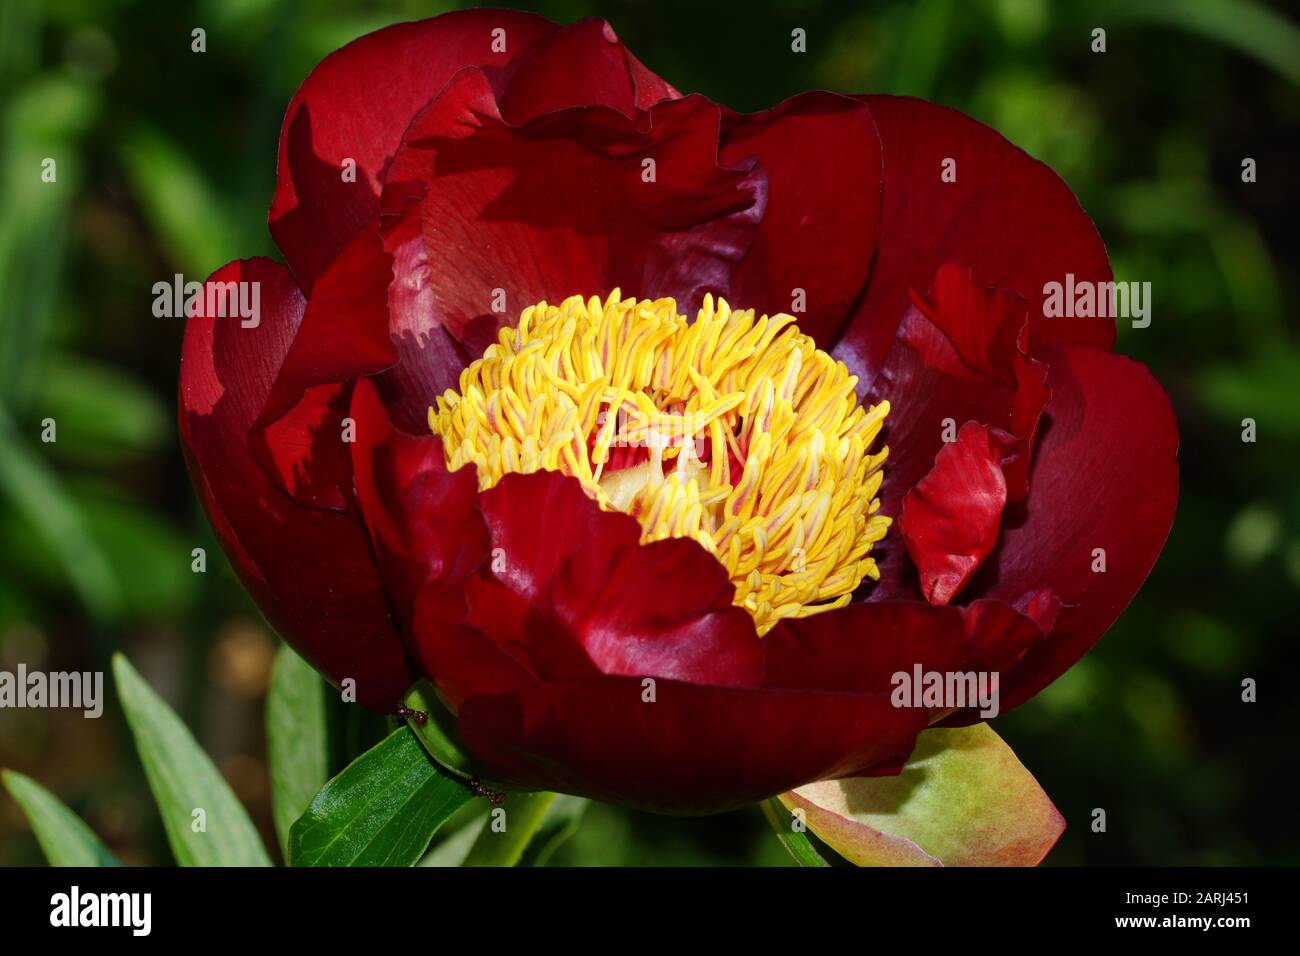 Pfingstrose Chervoni Vitryla. Rote Pfingstrose. Paeonia lactiflora (Chinesische Pfingstrose oder gemeinsamen Garten päonie). Stockfoto